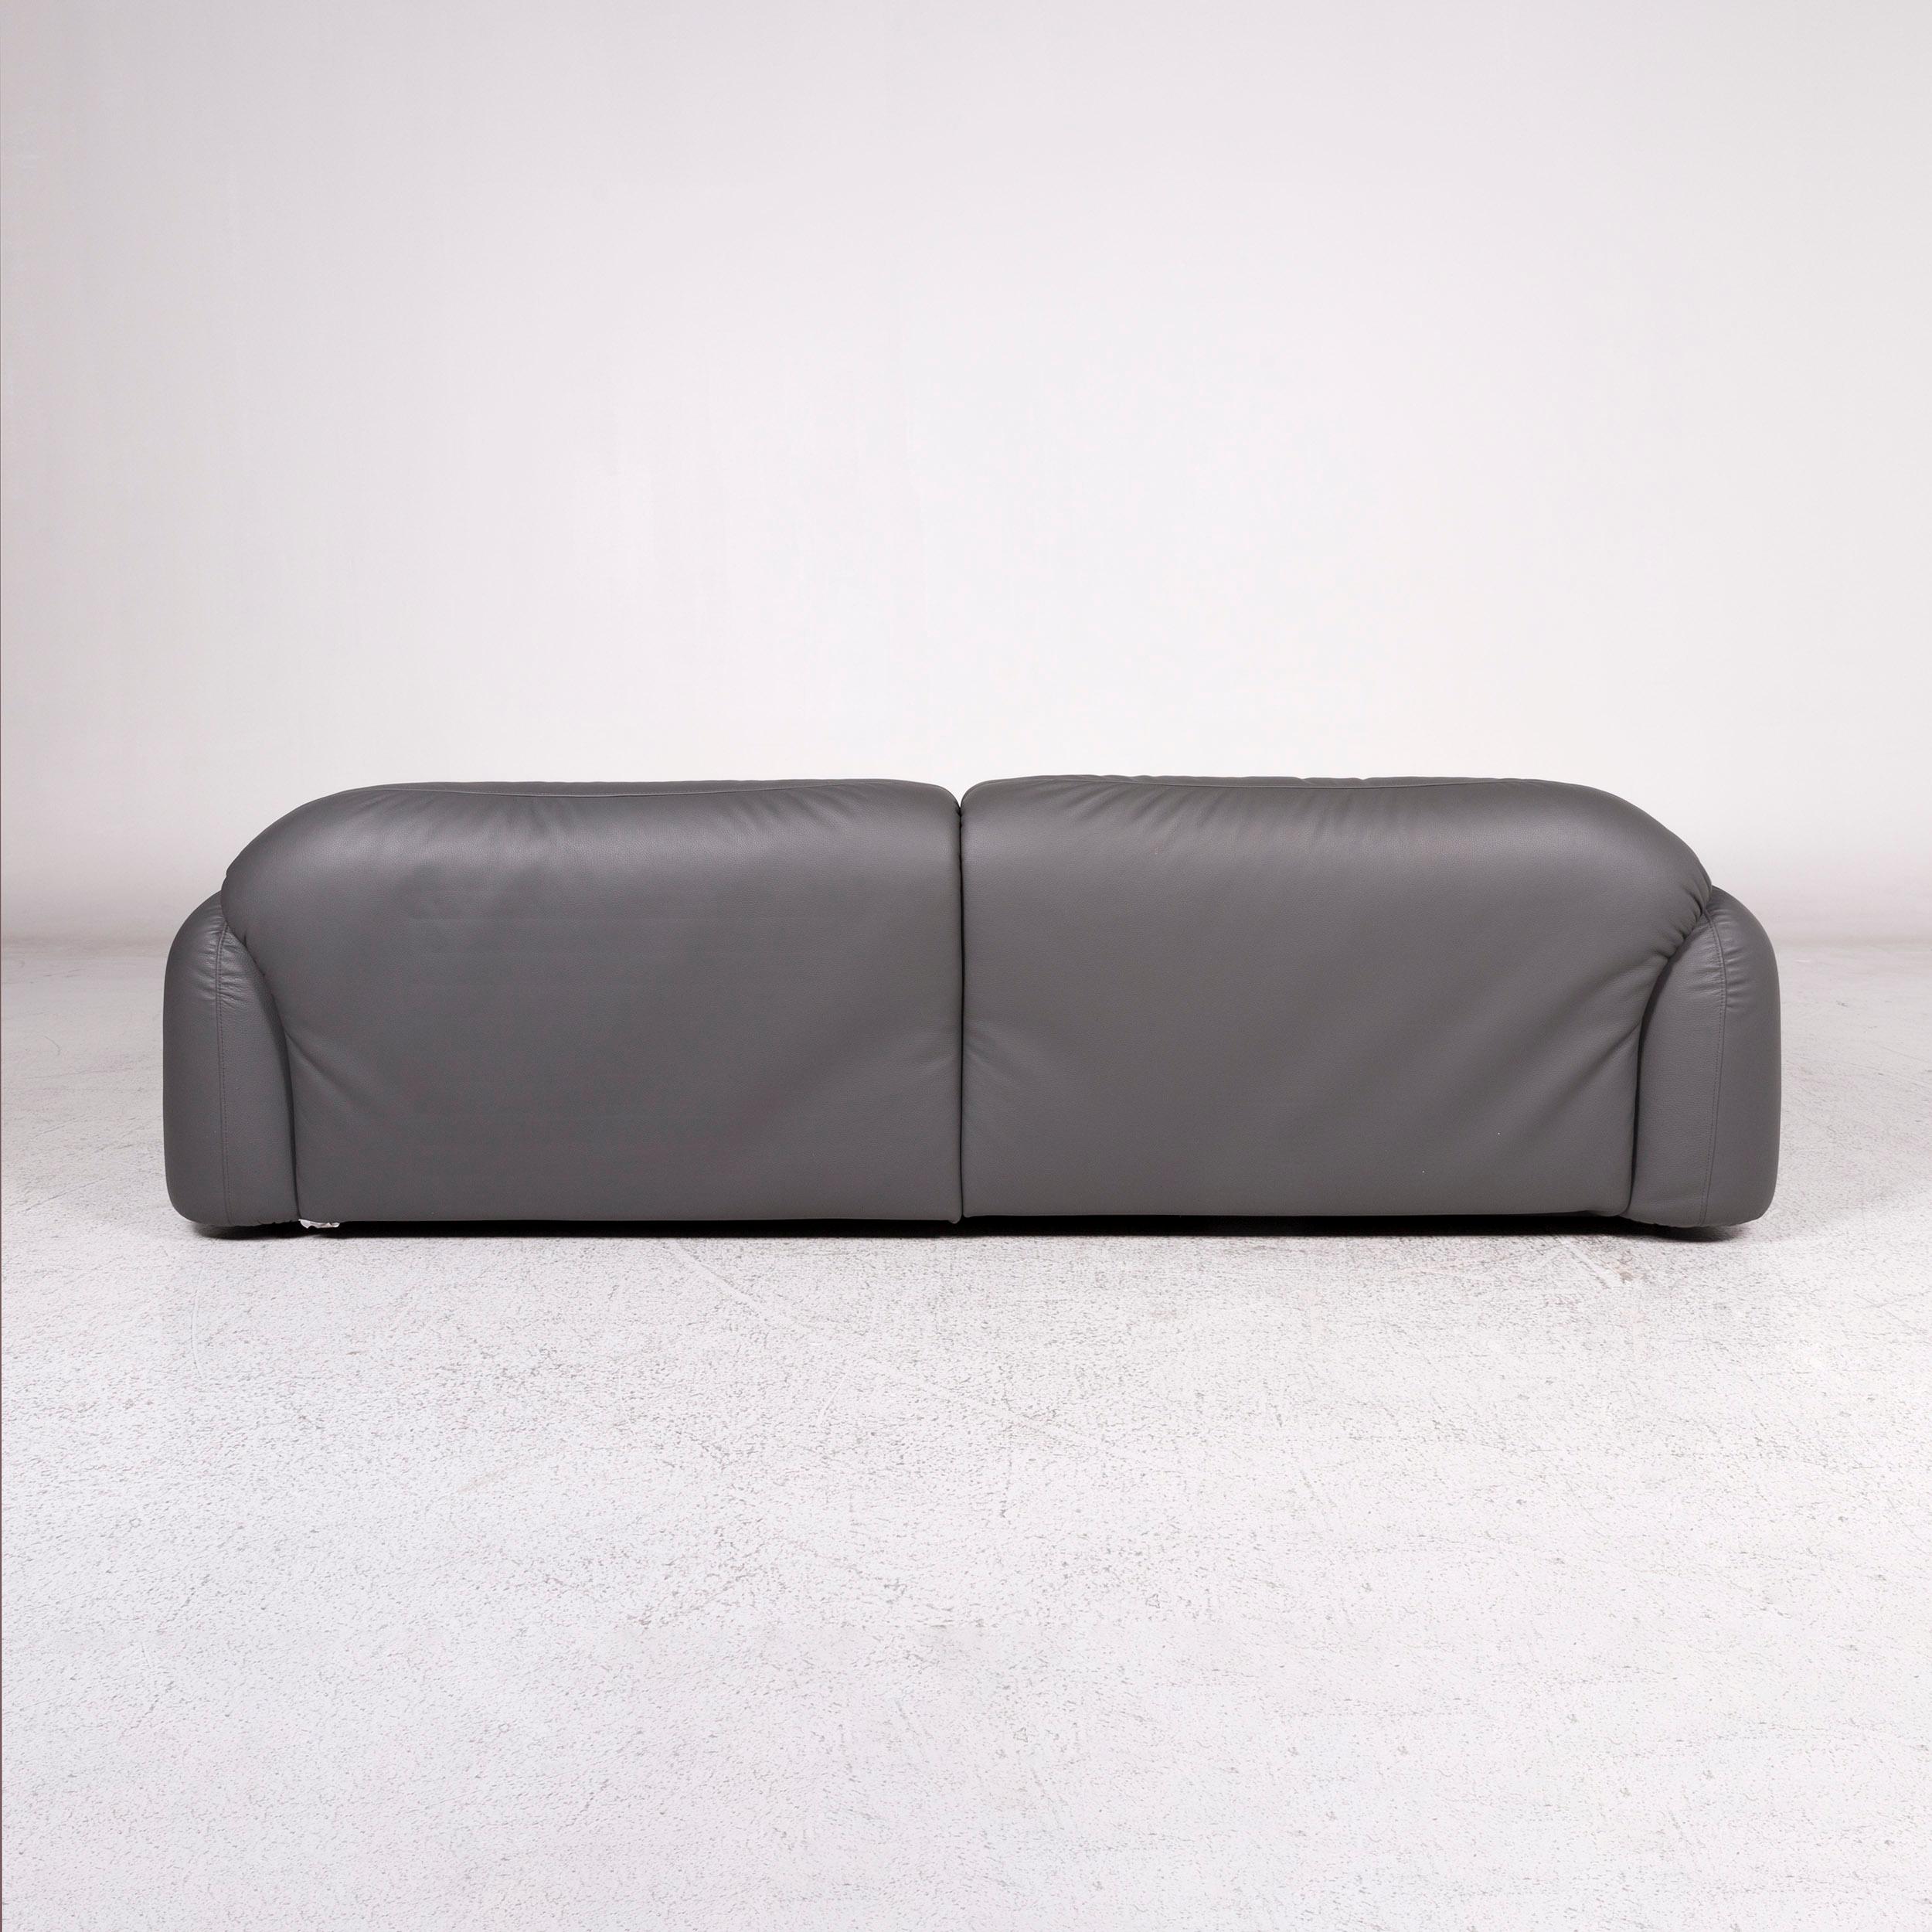 Busnelli Piumotto Leather Sofa Gray Three-Seat Marco Boga Couch 1